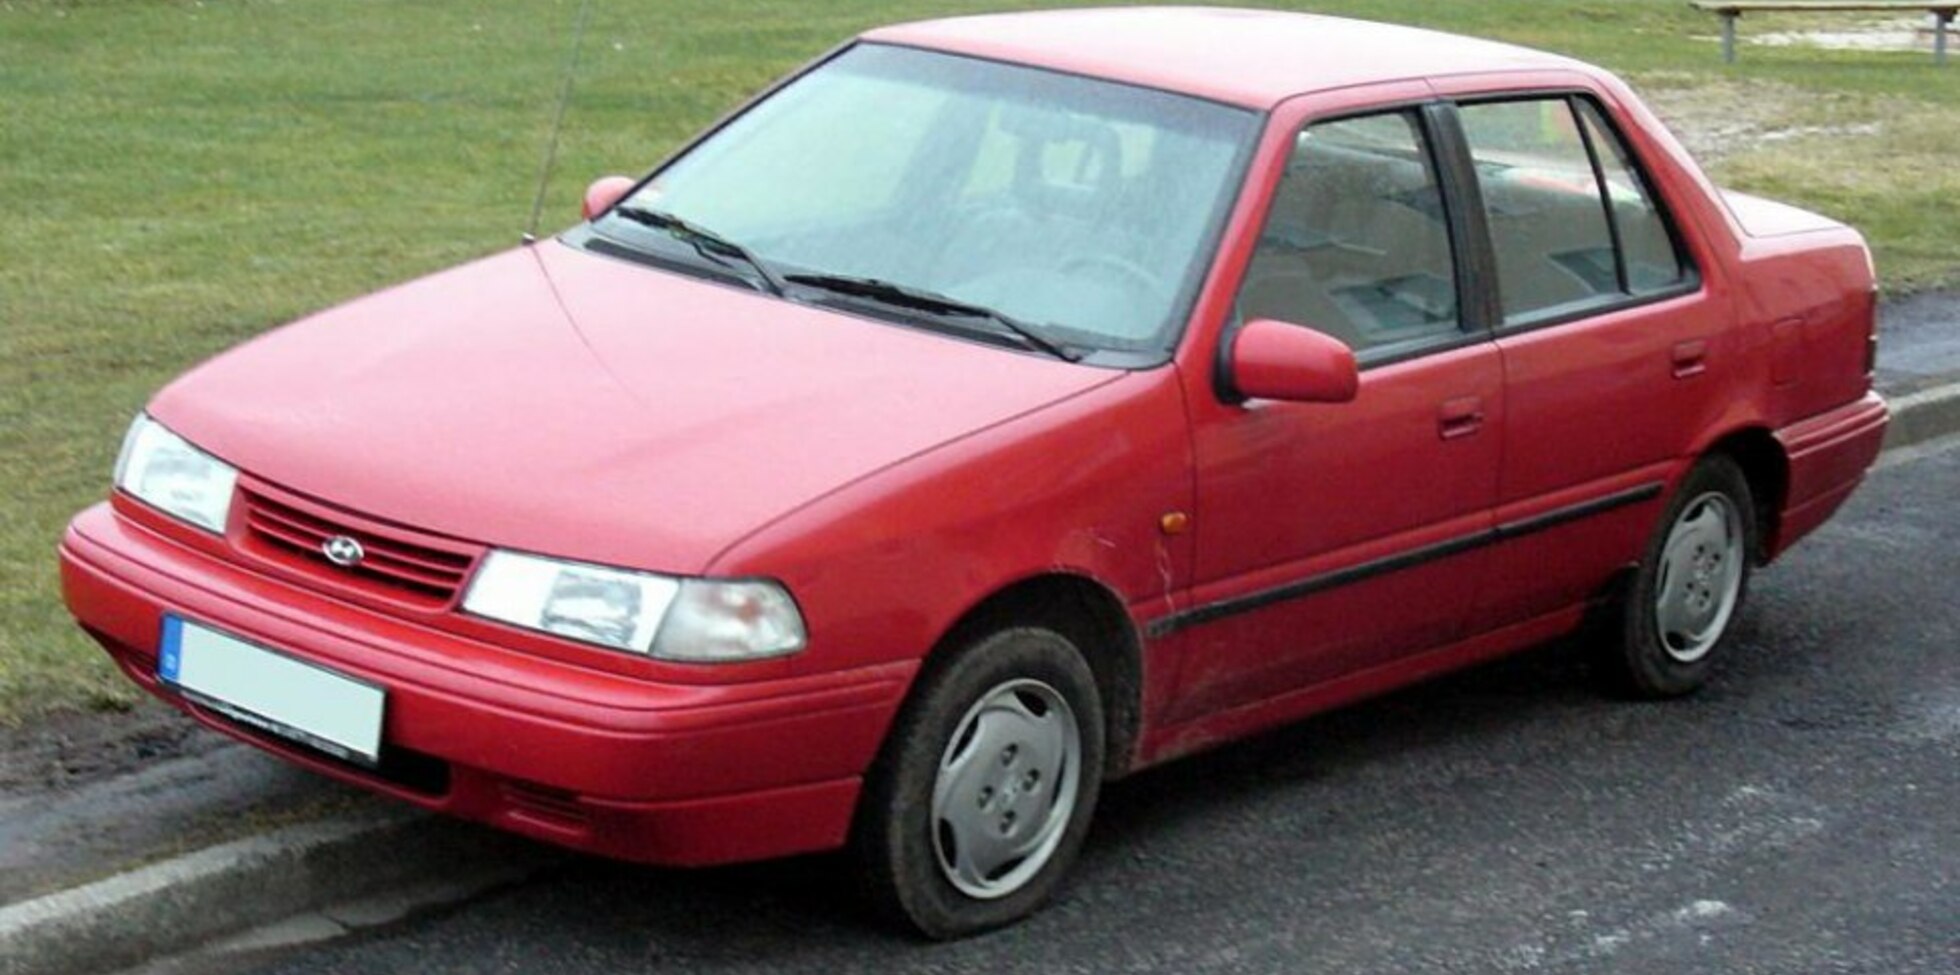 Hyundai Pony (X-2) 1.5 i (84 Hp) 1989, 1990, 1991, 1992, 1993, 1994, 1995 